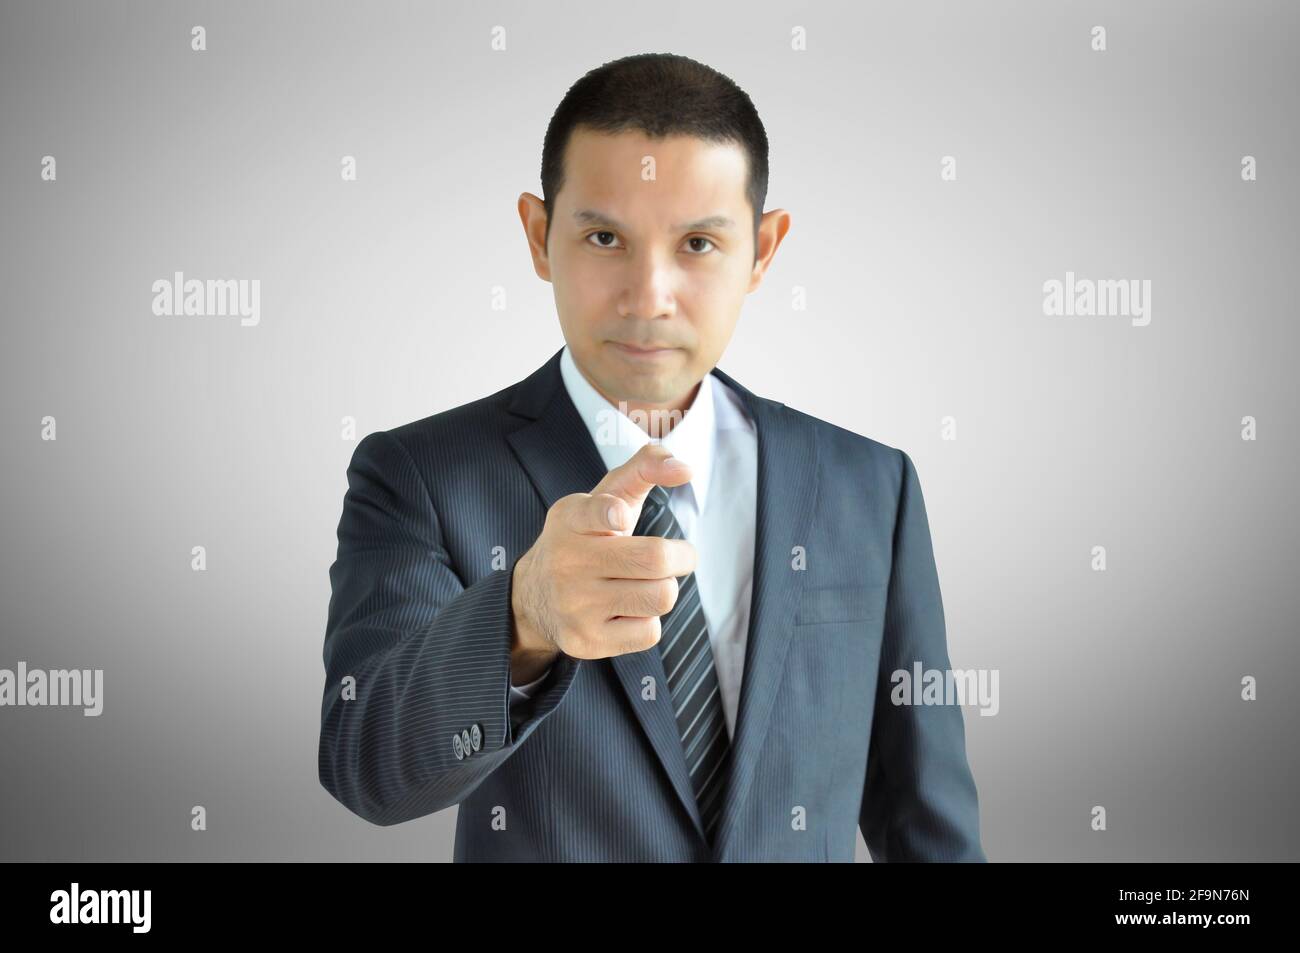 Un homme d'affaires asiatique vous pointe du doigt avec un visage sérieux Banque D'Images